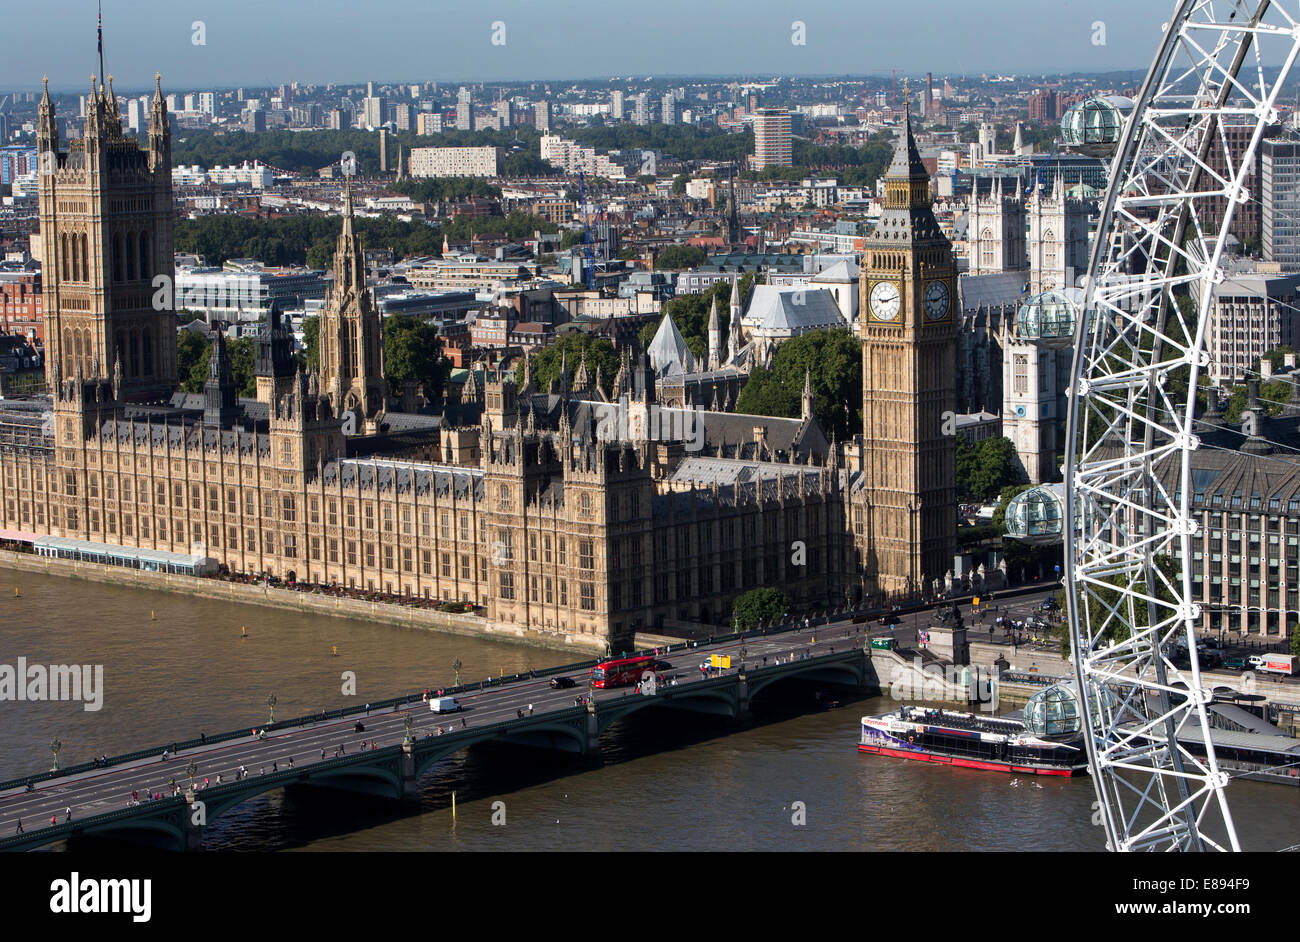 Le case di Parliament-The Palace di Westminster-The Elizabeth Tower con il Big Ben,la Camera dei Comuni e dalla Camera dei Lords Foto Stock